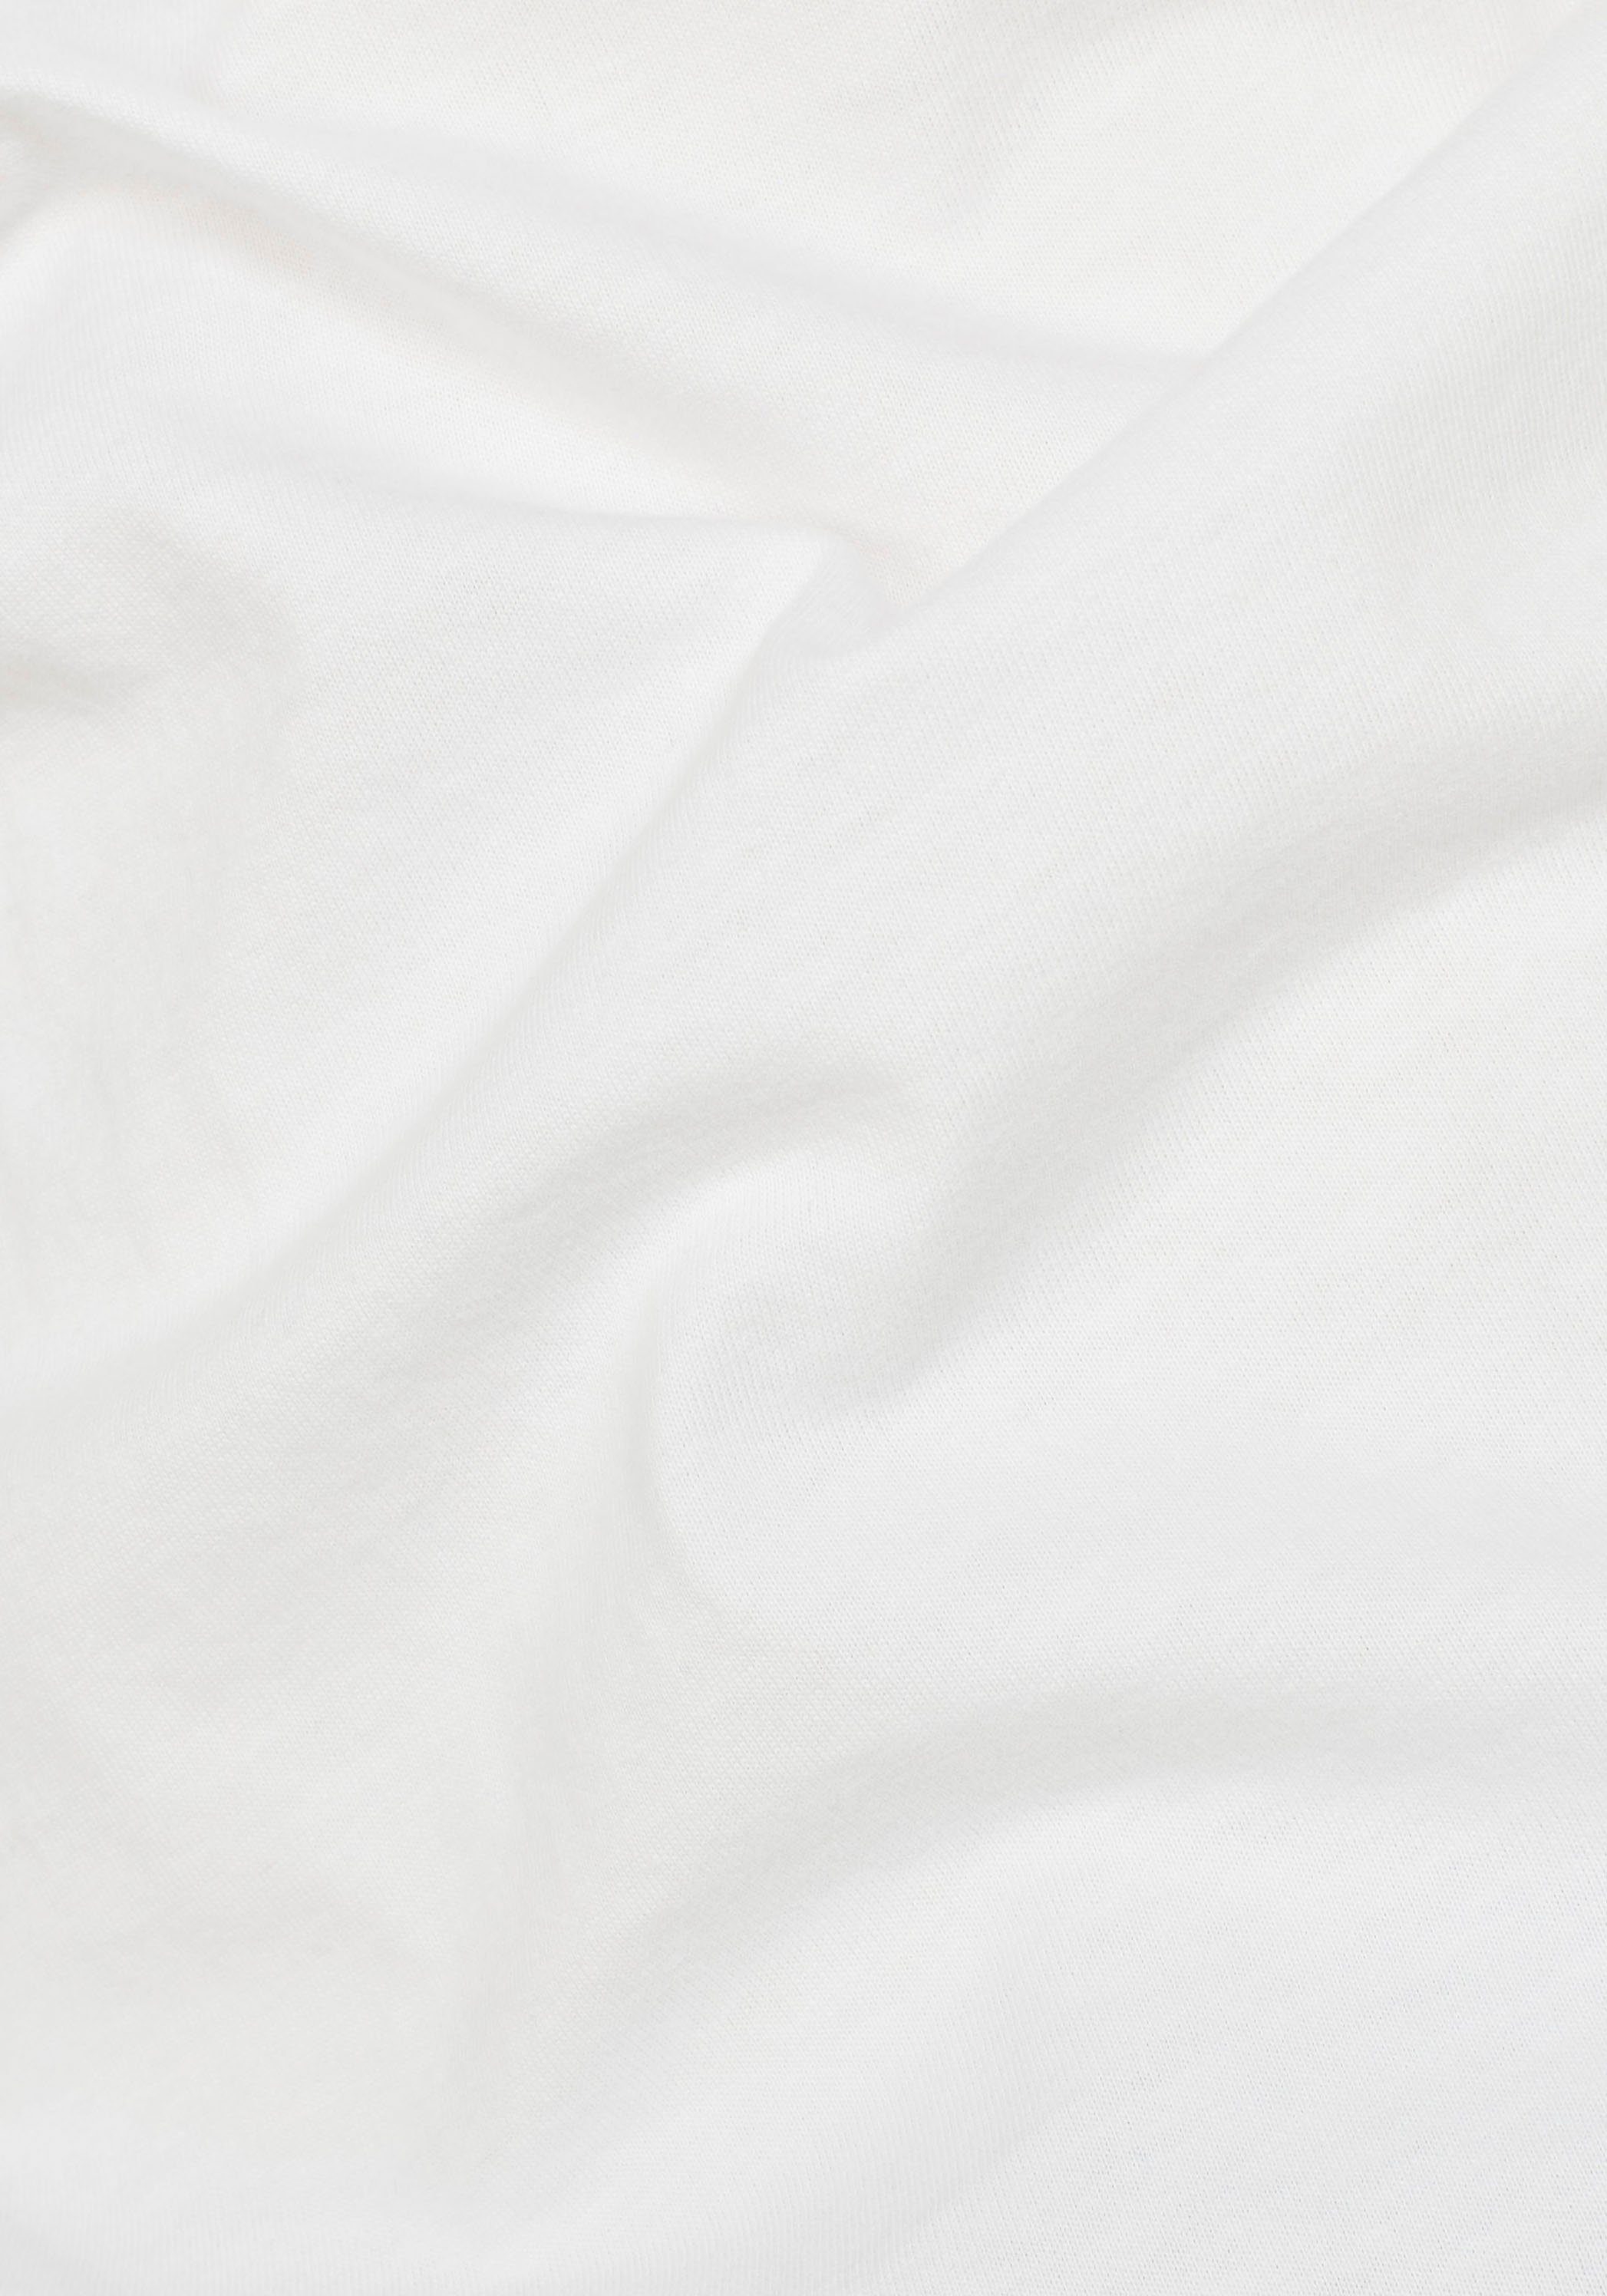 Stitching Lash white G-Star RAW T-Shirt kleinem Logo mit